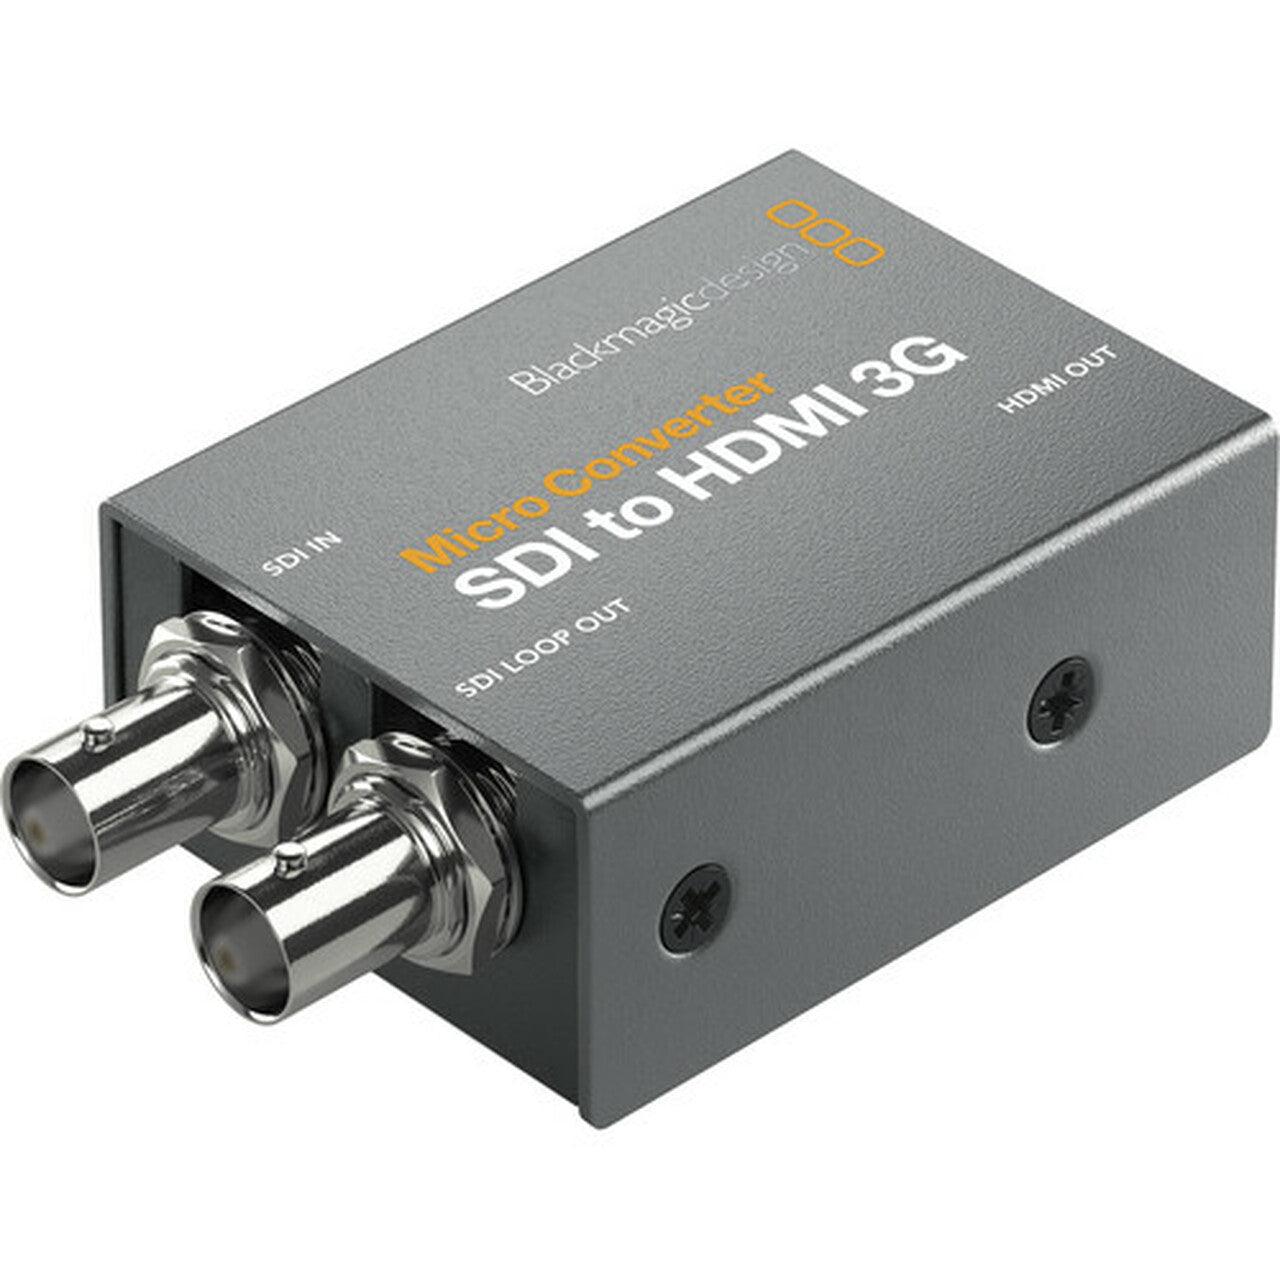 Blackmagic Design Converters Micro Converter SDI to HDMI 3G PSU